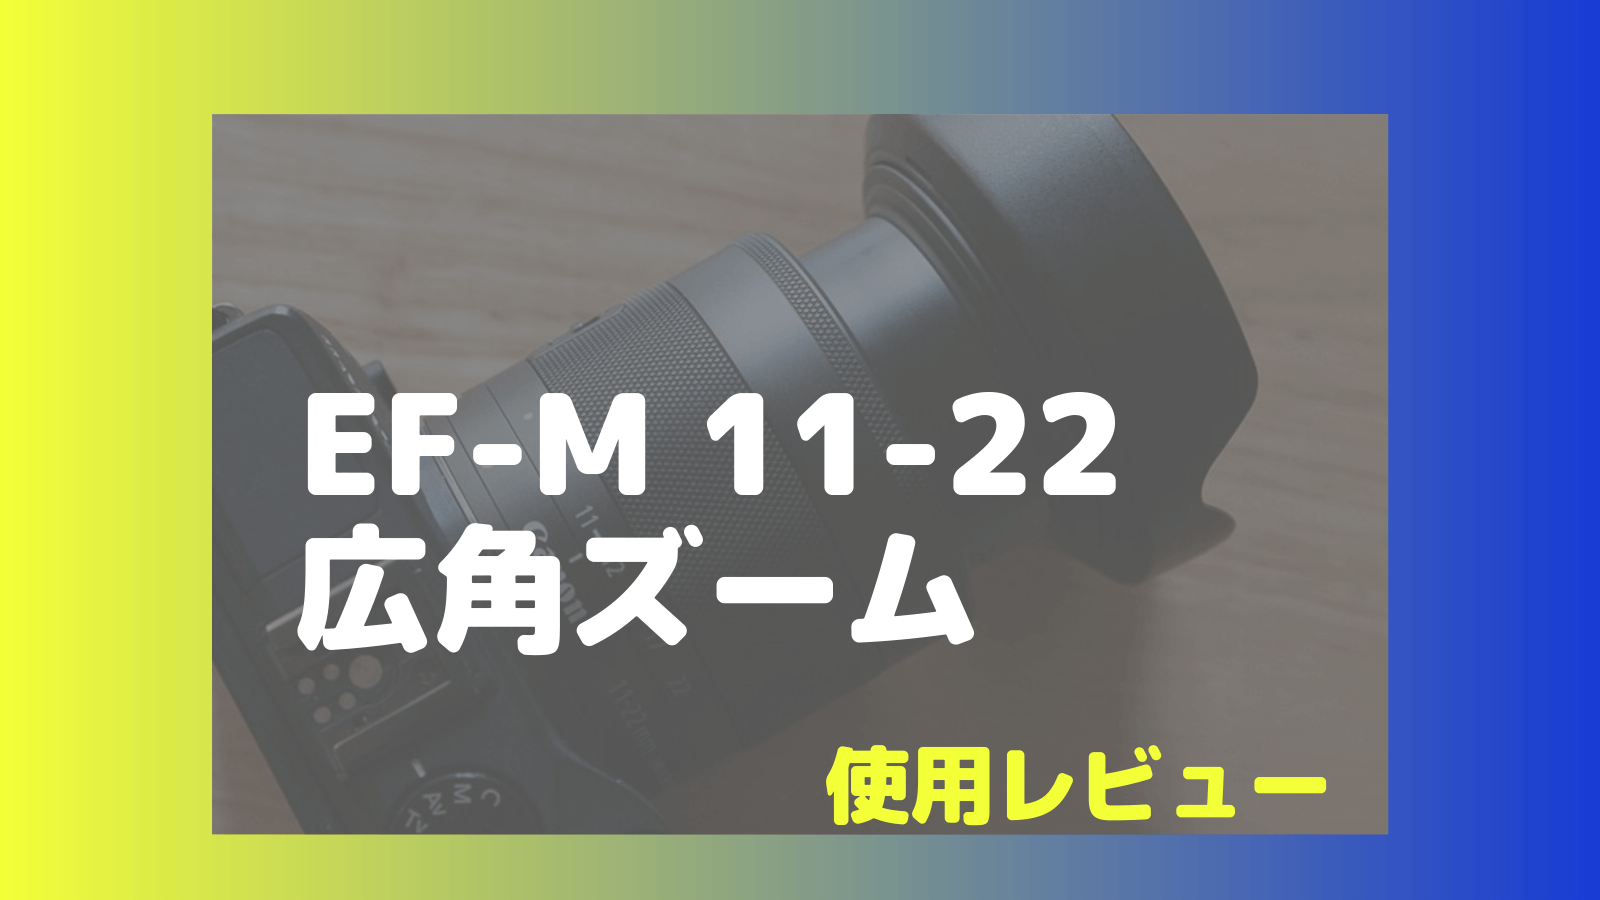 近鉄京都線 Canon EF-M11-22 F4-5.6 IS STM 超広角ズームレンズ